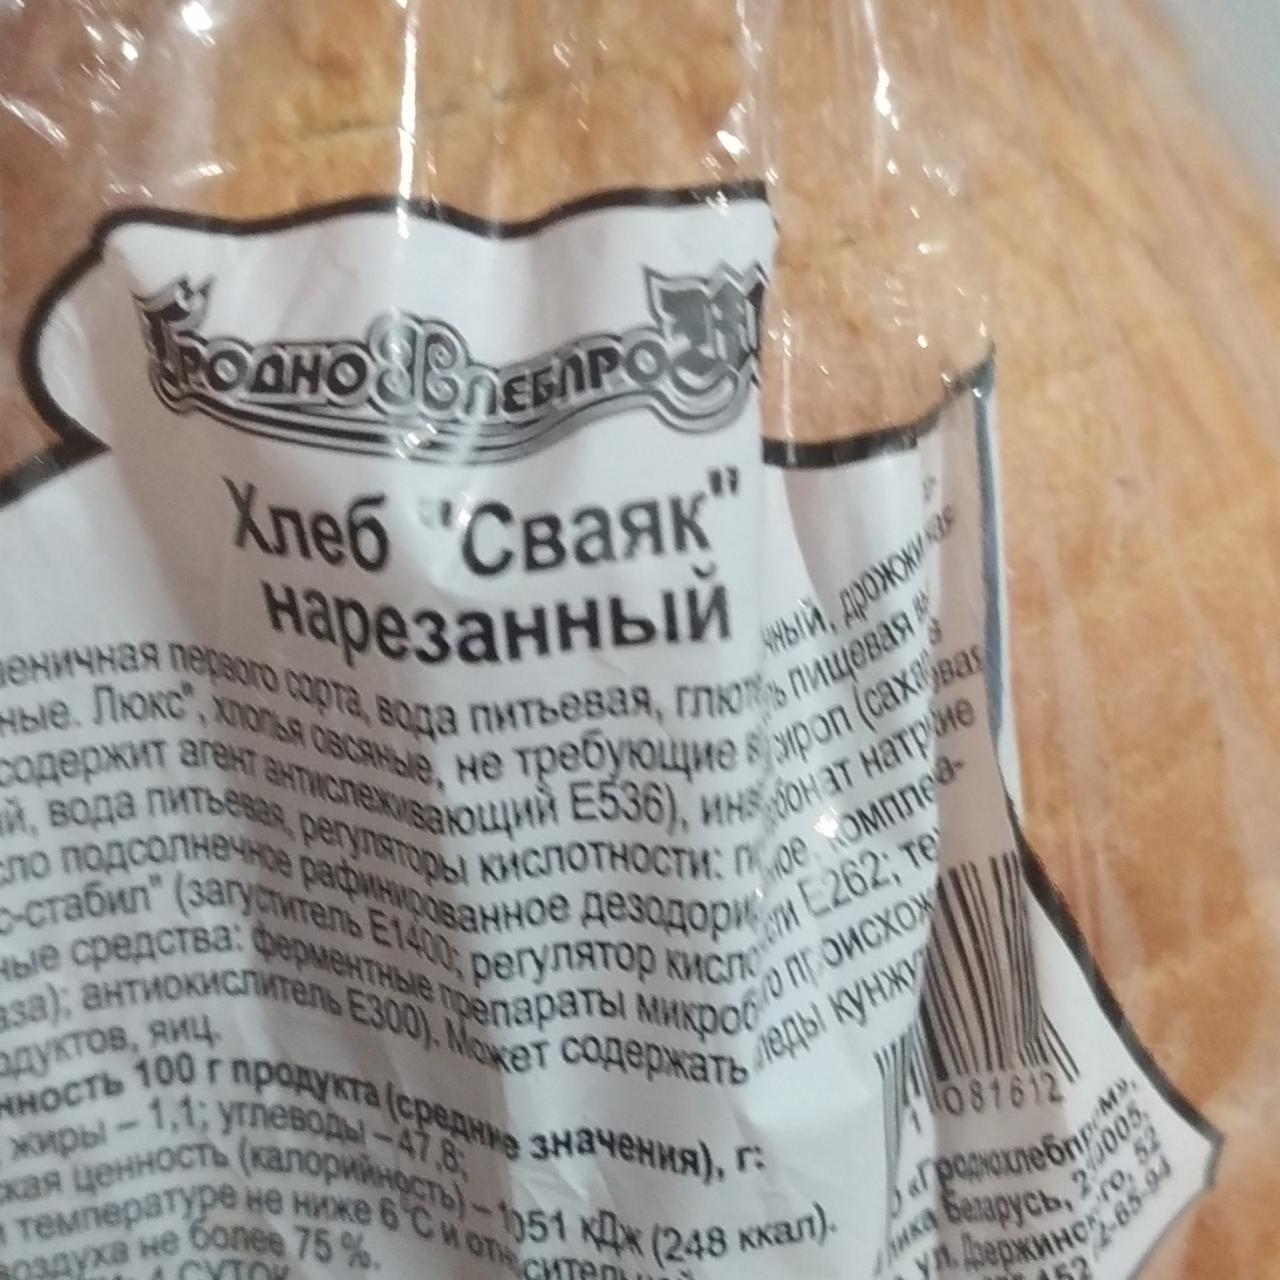 Фото - хлеб сваяк Гроднохлебпром